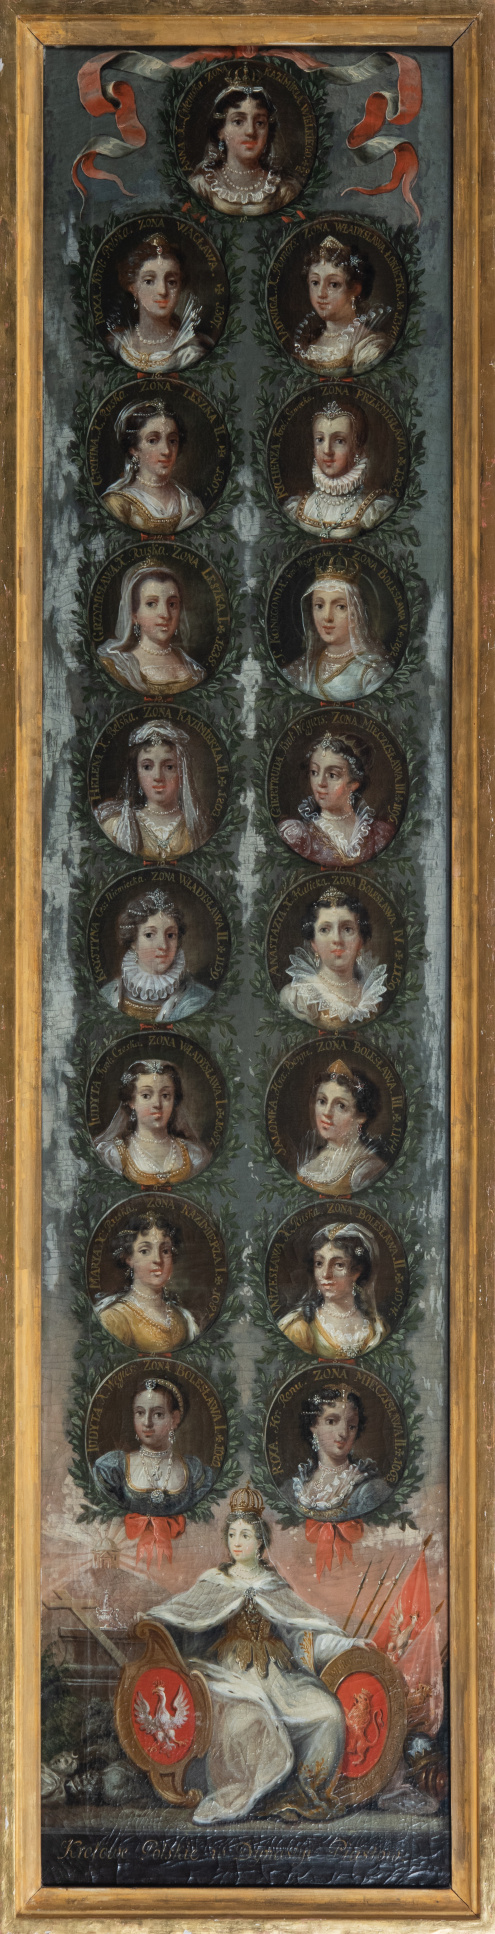 Obraz Michała Stachowicza przedstawiający portrety żon królów z dynastii Piastów w siedemnastu owalnych medalionach.